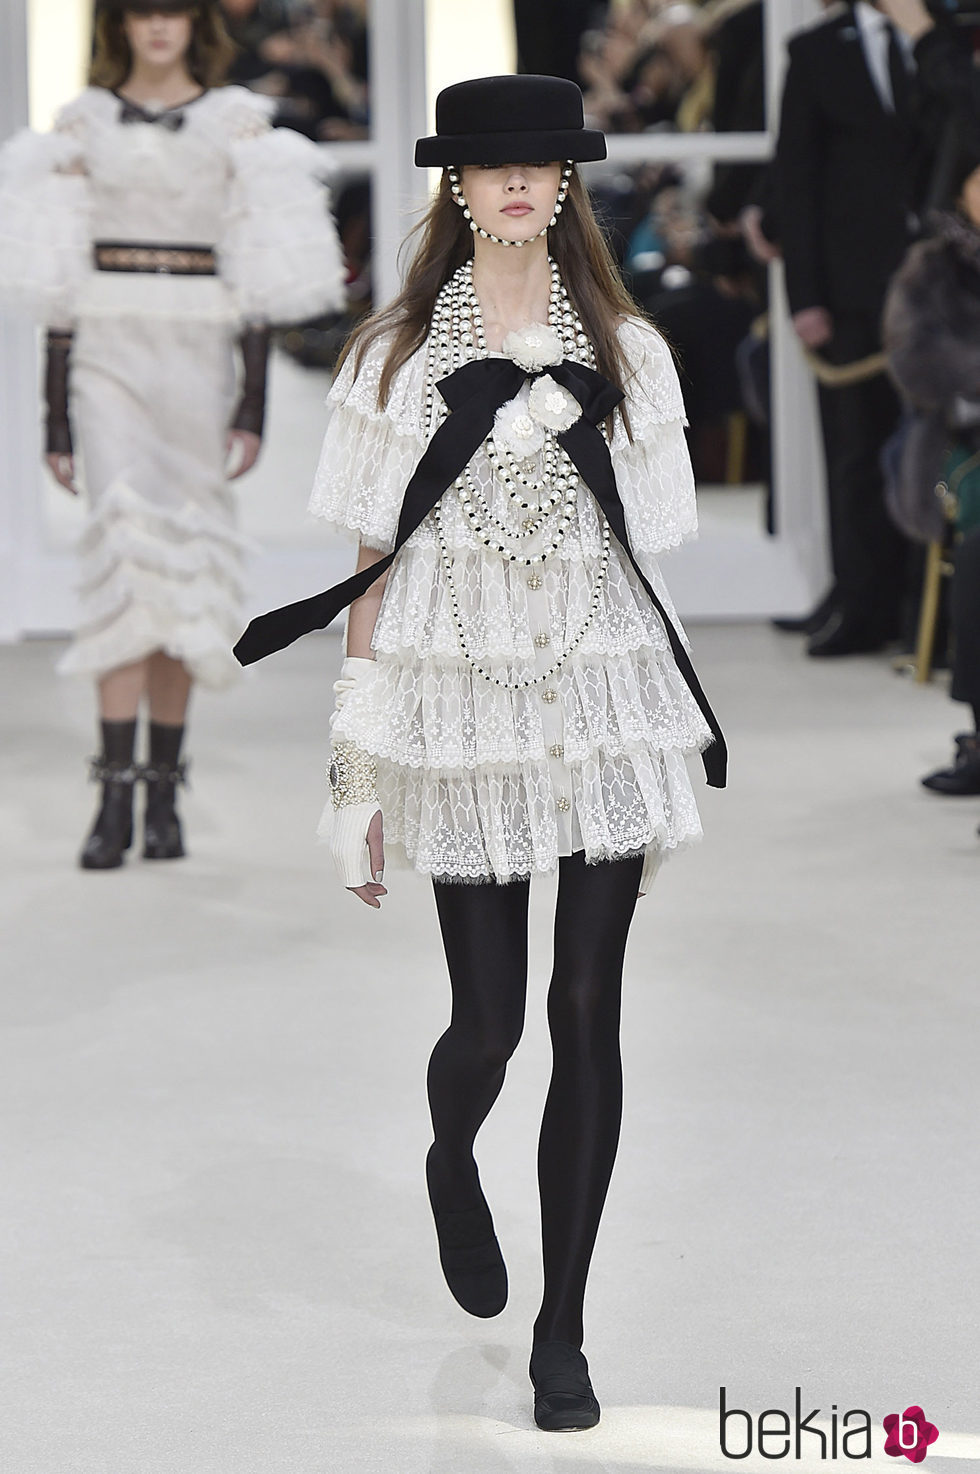 Vestido de cancán en la Fashion Week de Paris con su coleccion otoño/invierno 2016-17